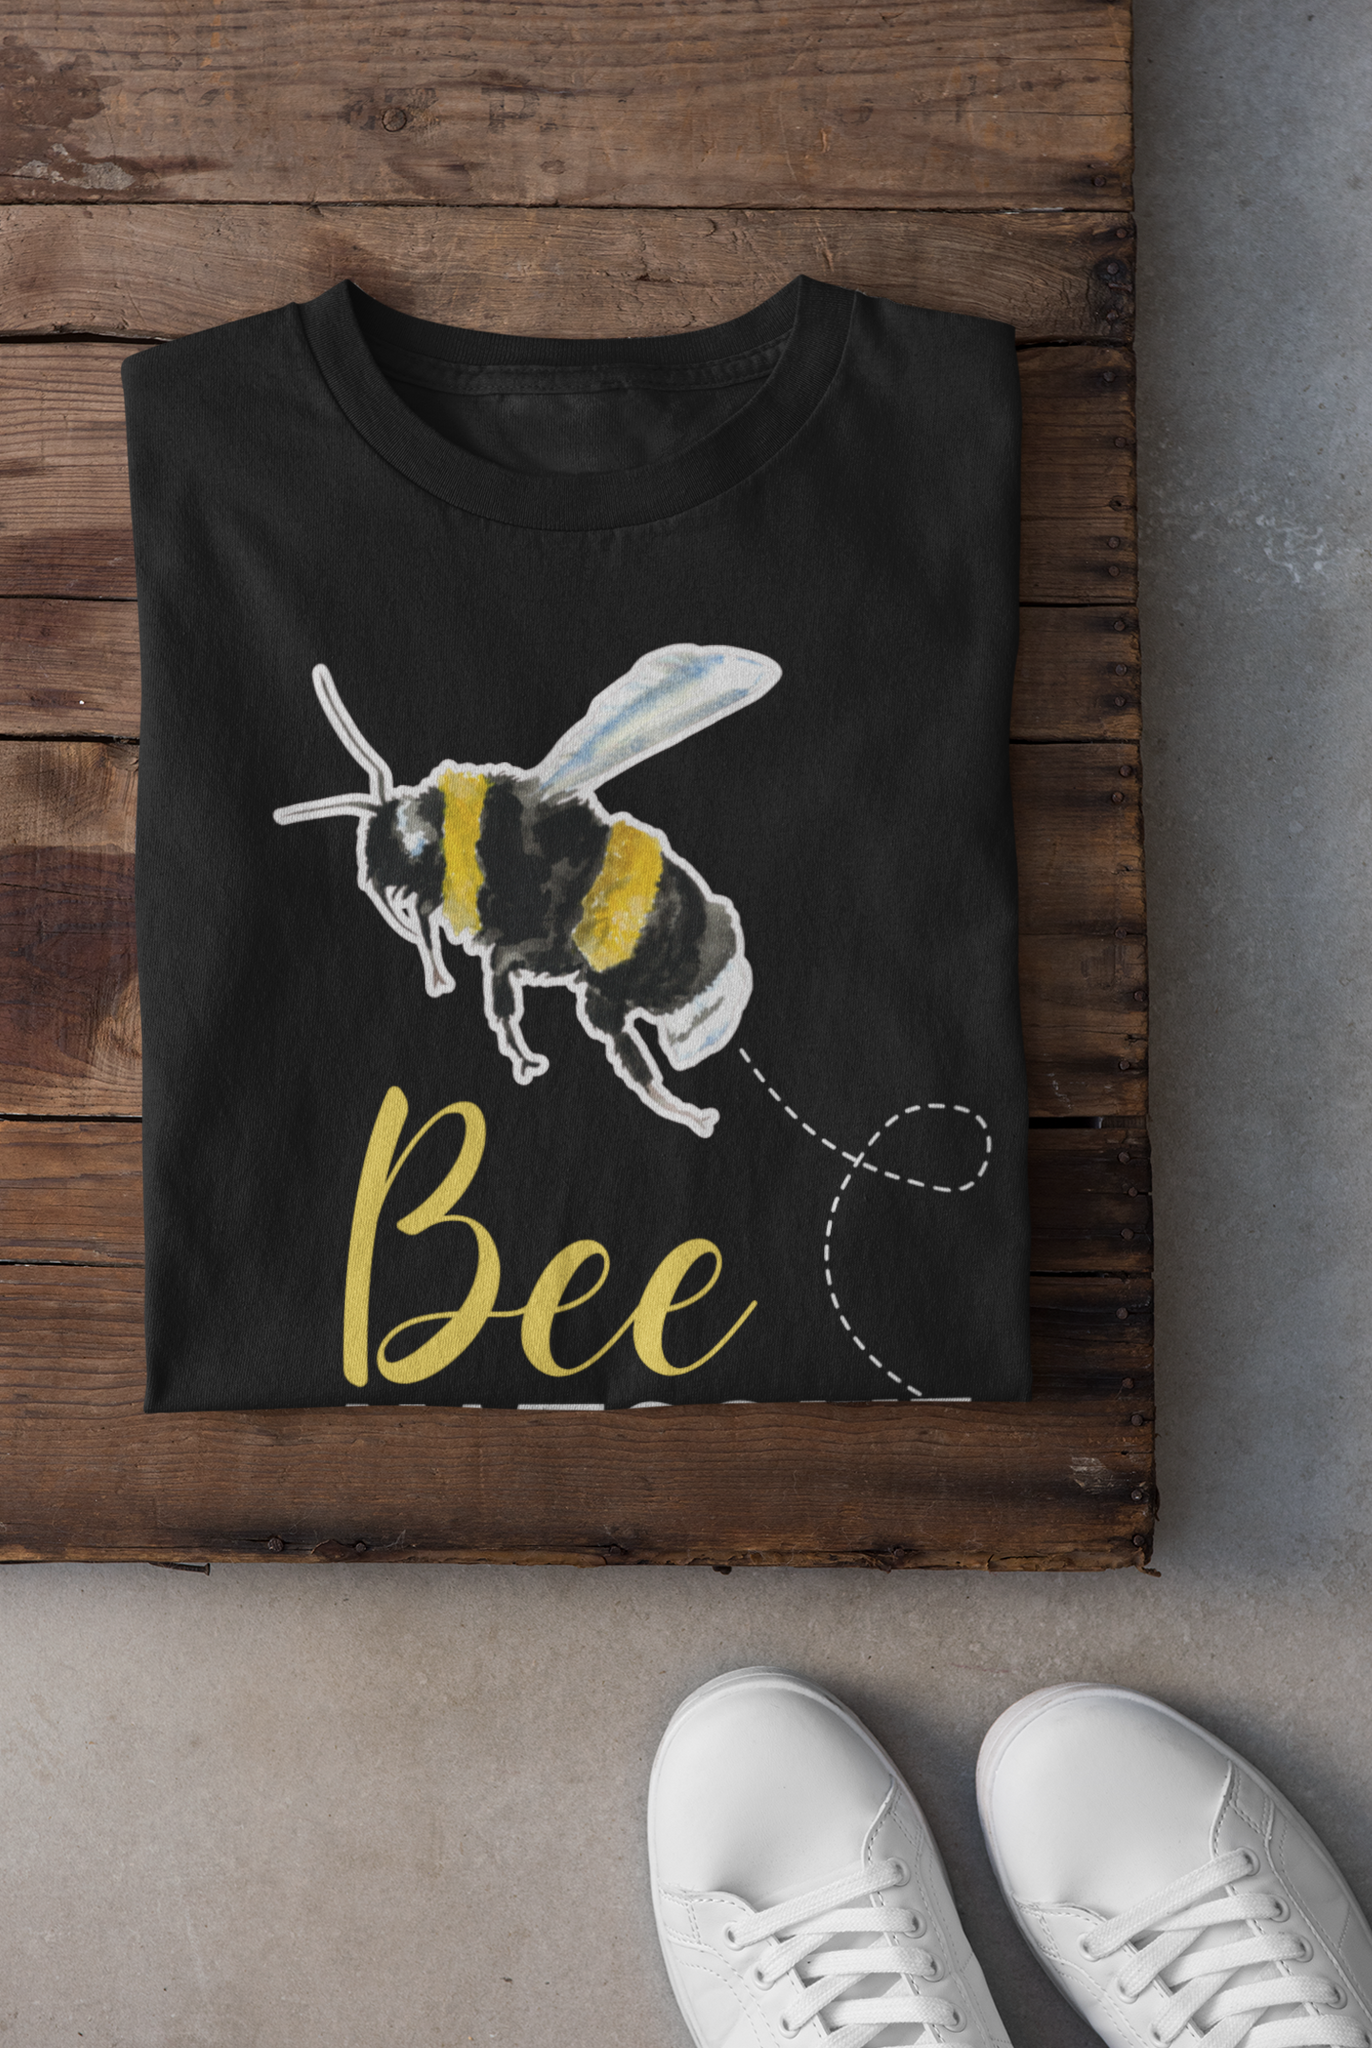 T-shirt - Bee Awesome [vuxen]